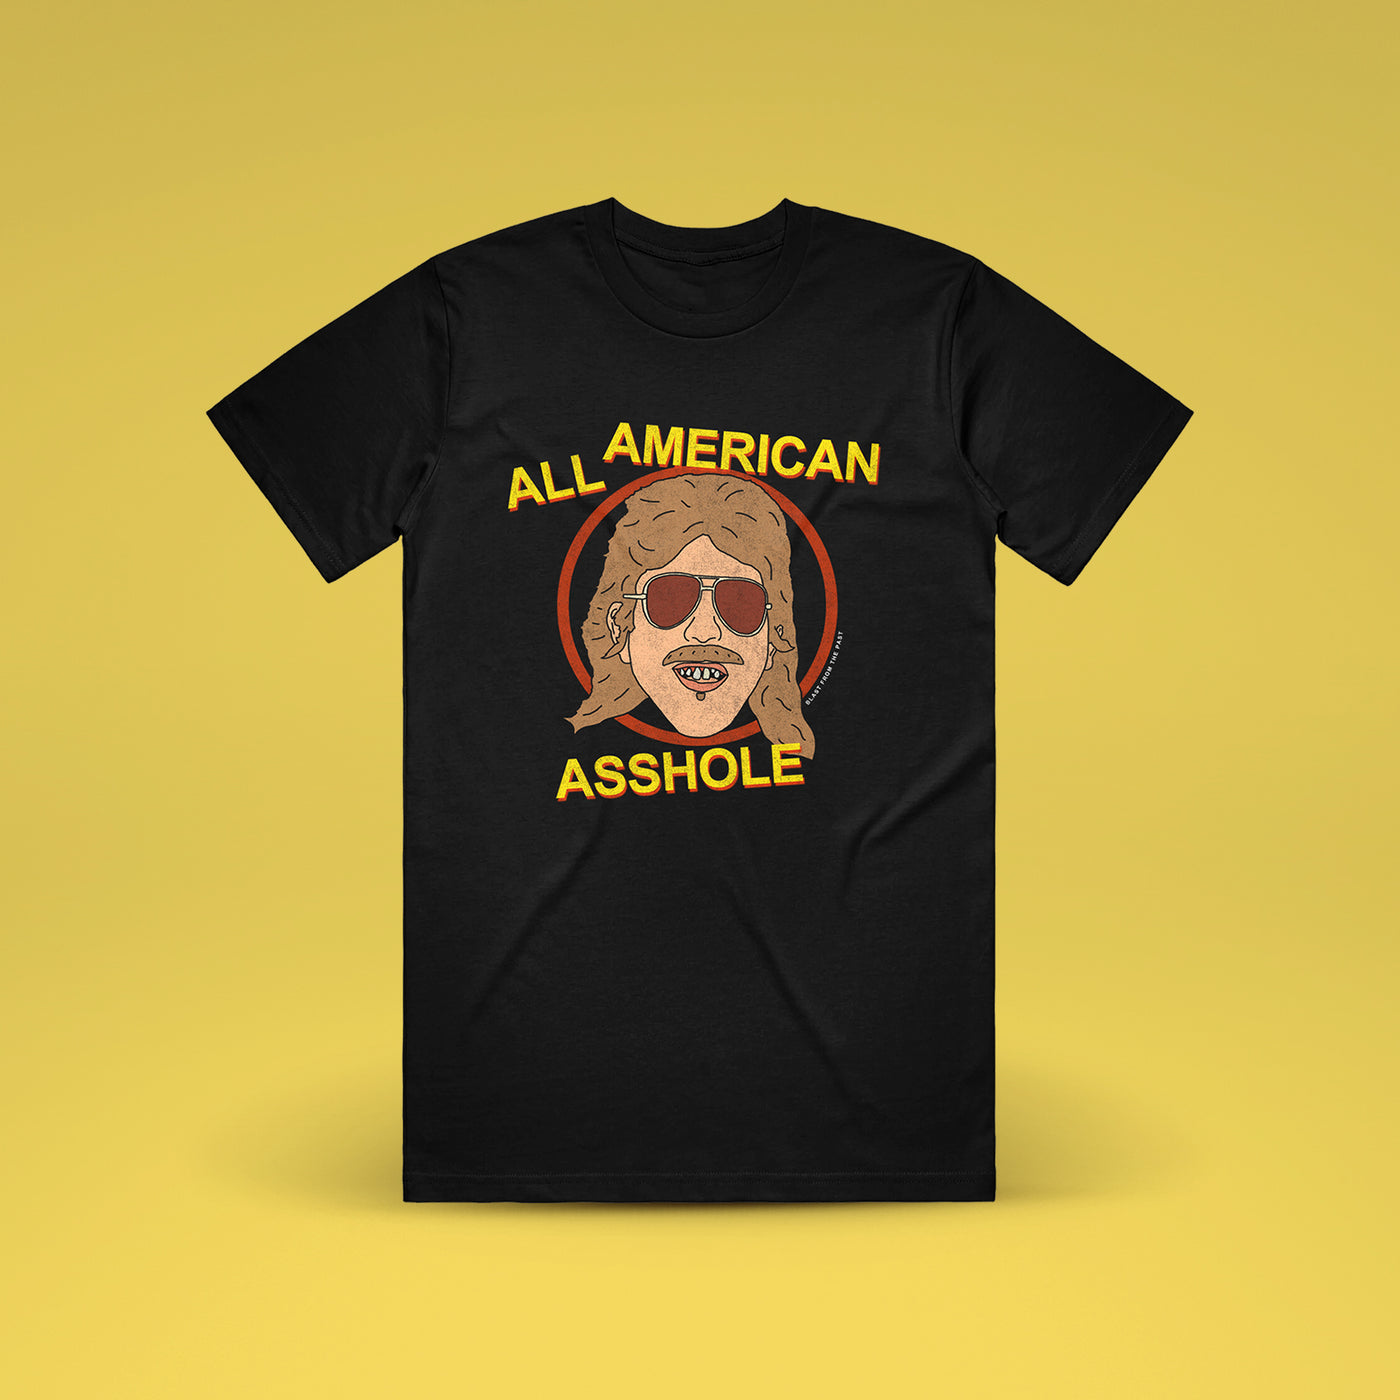 Chris DeMakes - All American Asshole Shirt